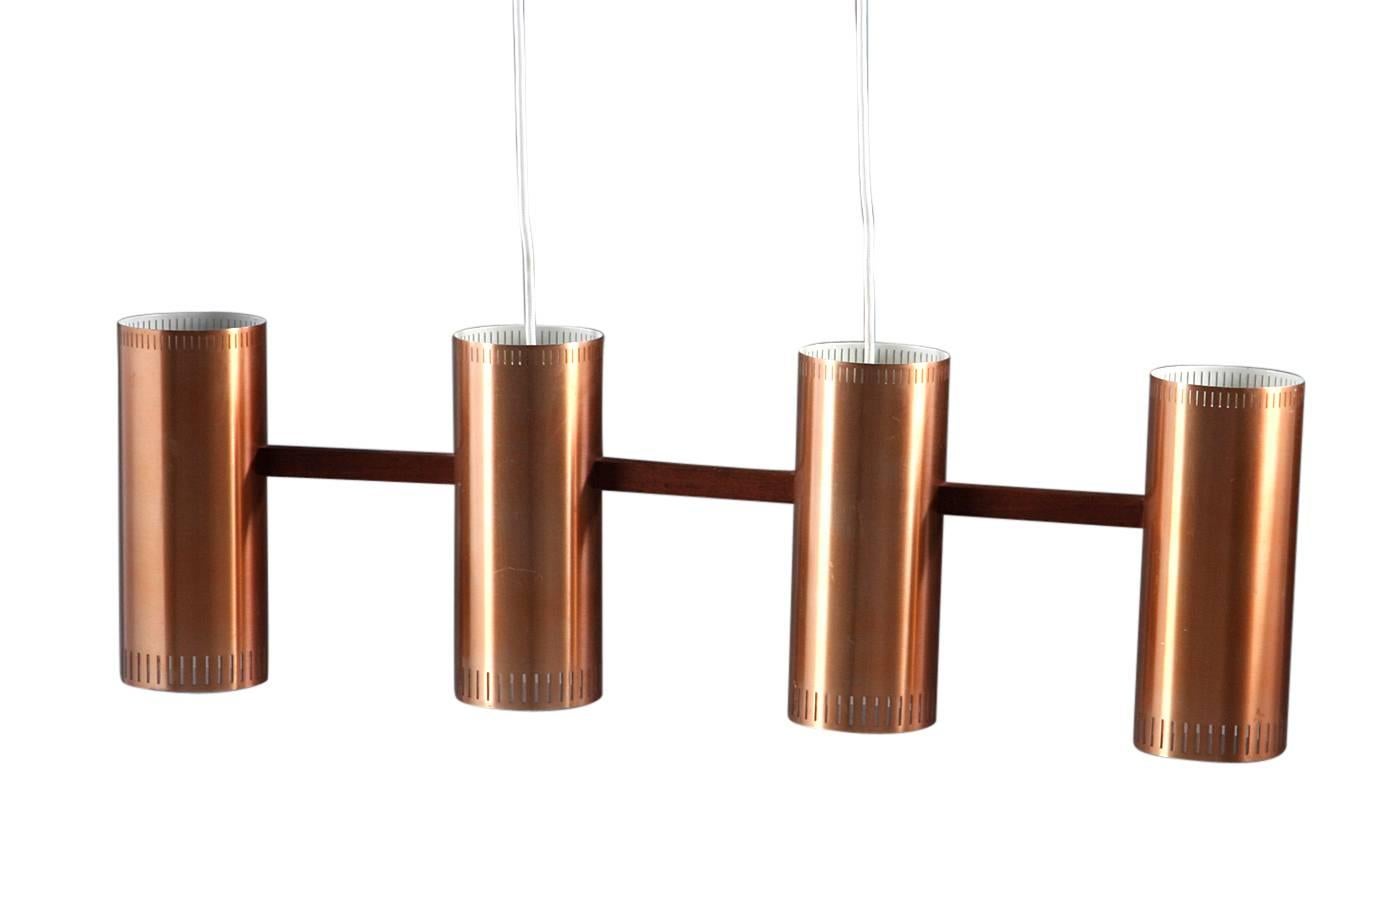 Jo Hammerborg, made of copper, suspension and teak wood frame. Made by Fog & Mørup.
Measures: H 25/110 cm., L 82 cm.